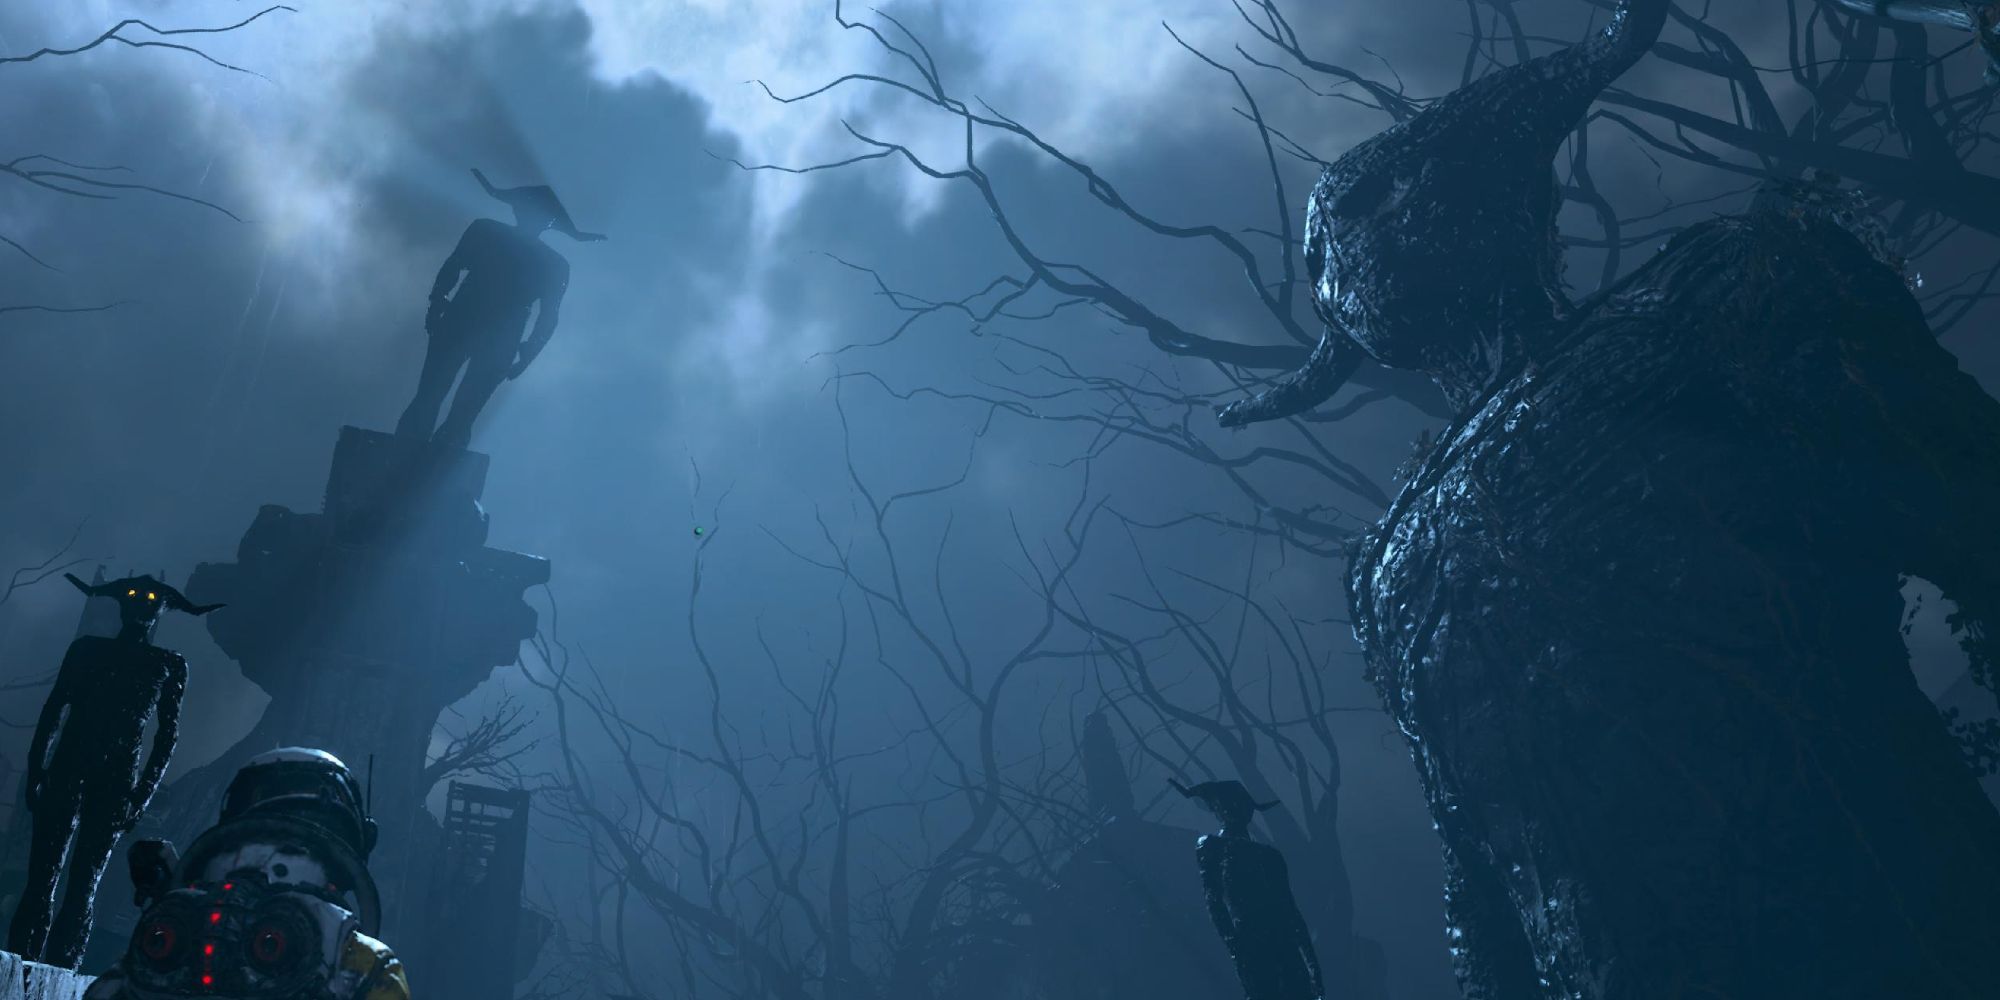 Gigantescas estatuas fantasmagóricas que regresan reflejadas en la pálida luz de la luna